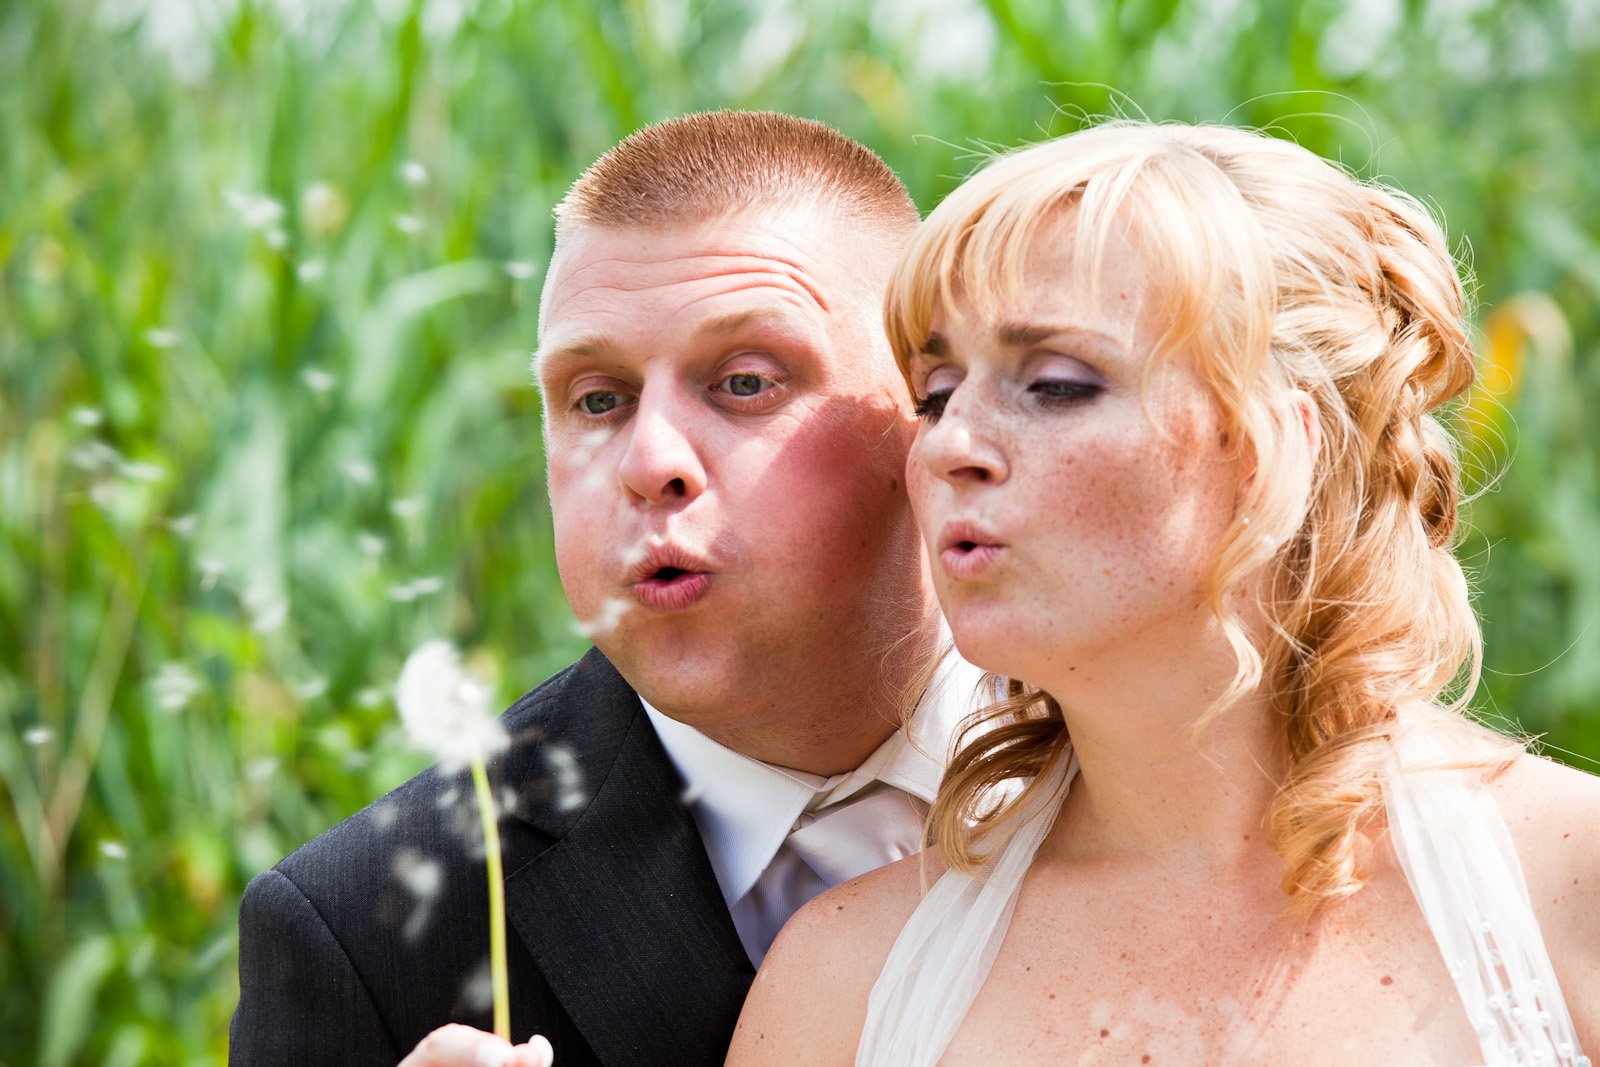 trouwshoot-bruidsfotografie-trouwfoto-feestfotografie-trouwreportage-Alex en Evelyn525.jpg